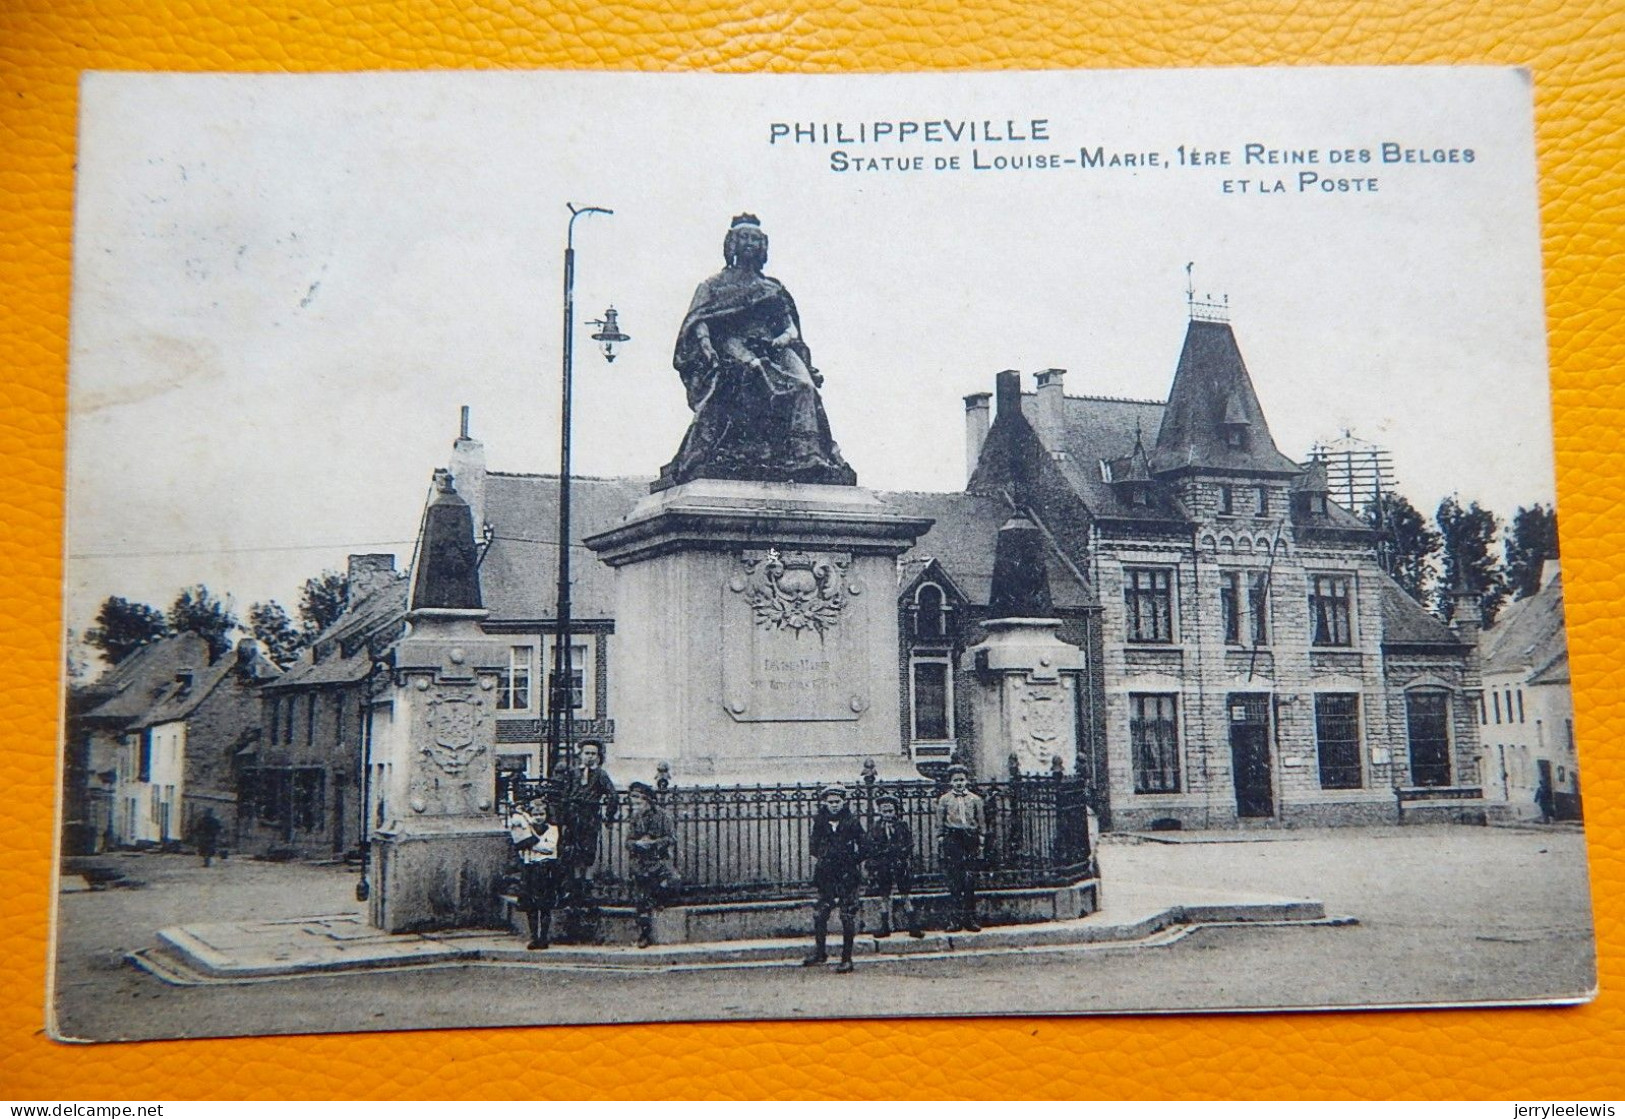 PHILIPPEVILLE  -  Statue De Louise-Marie, 1ère Reine Des Belges Et La Poste - Philippeville